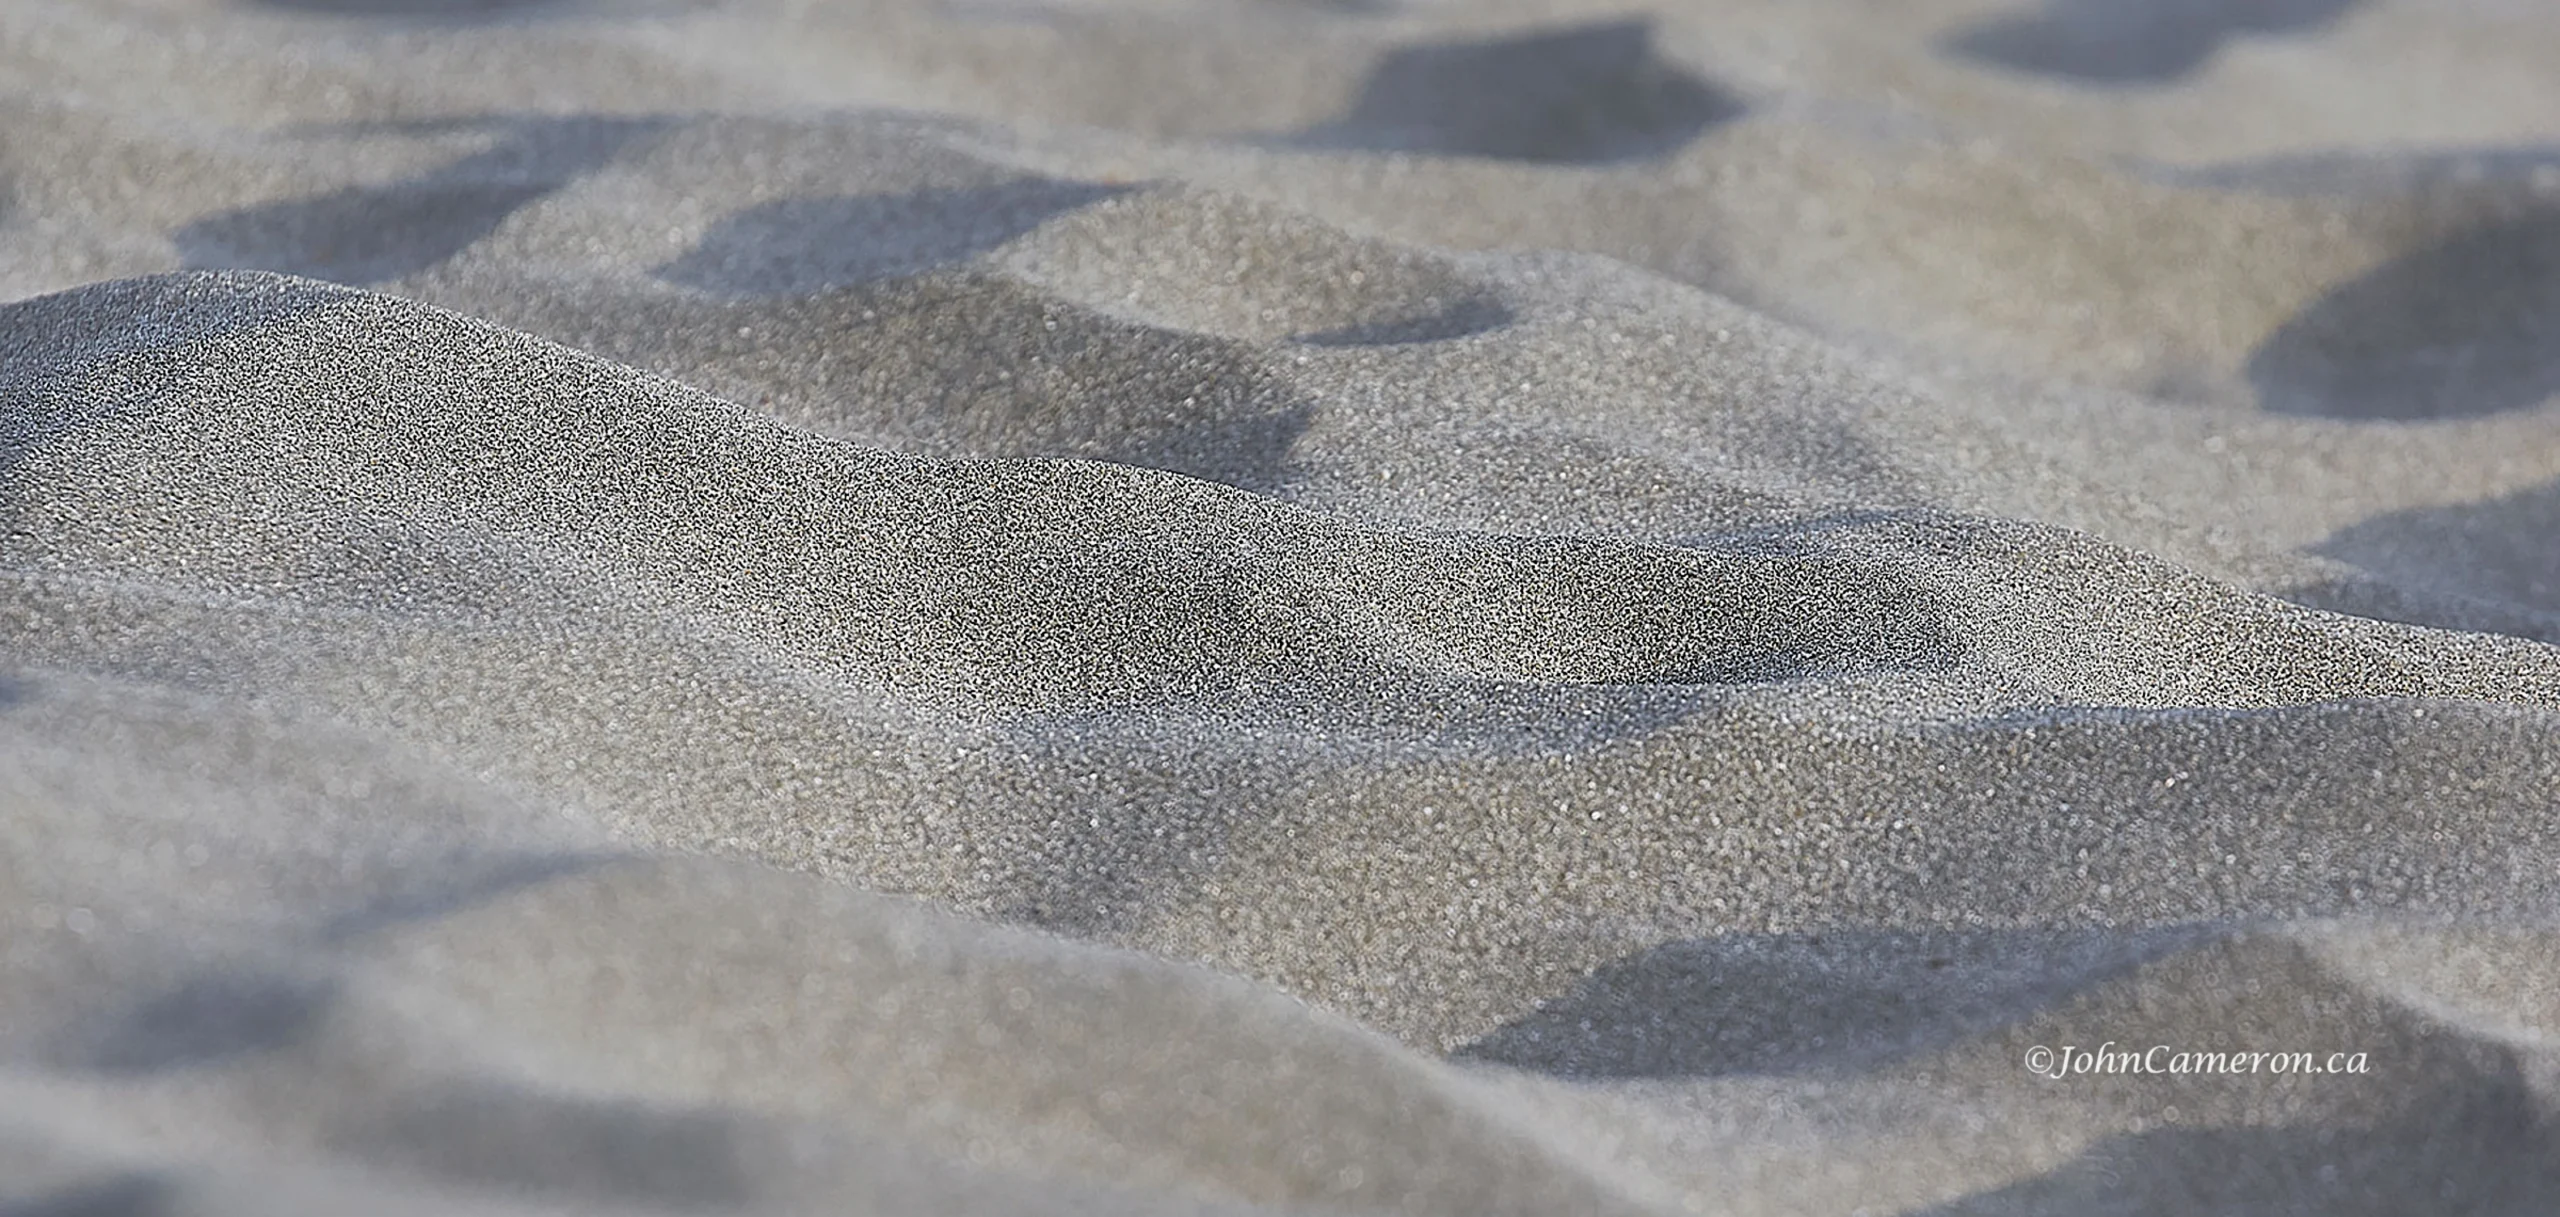 Beautiful Sand at Pachena Bay, BC © johncameron.ca